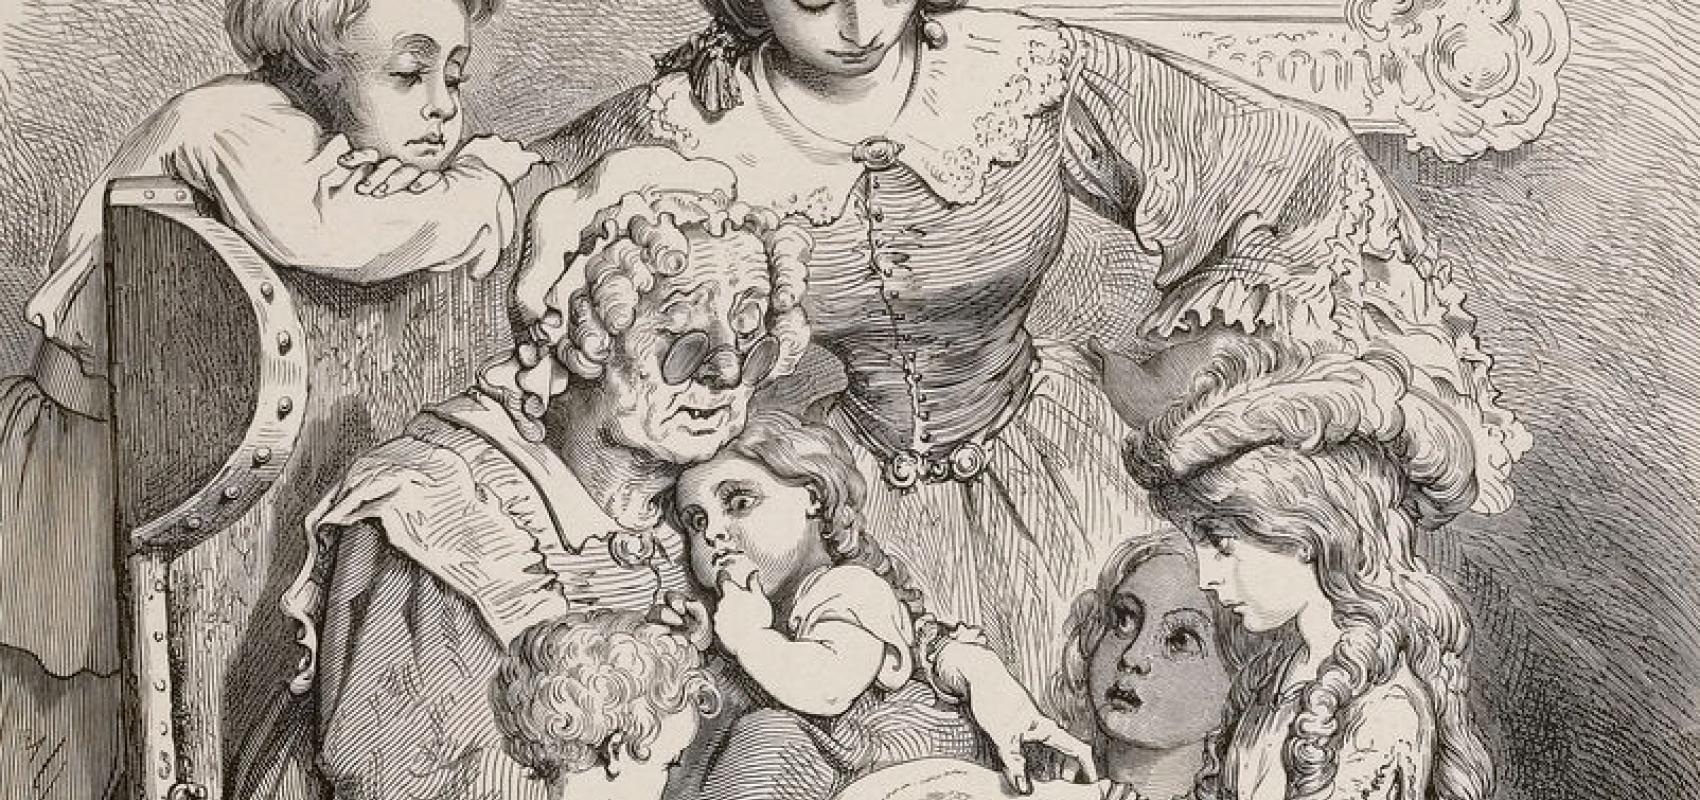 Les Contes de Charles Perrault, par Gustave Doré -  - BnF